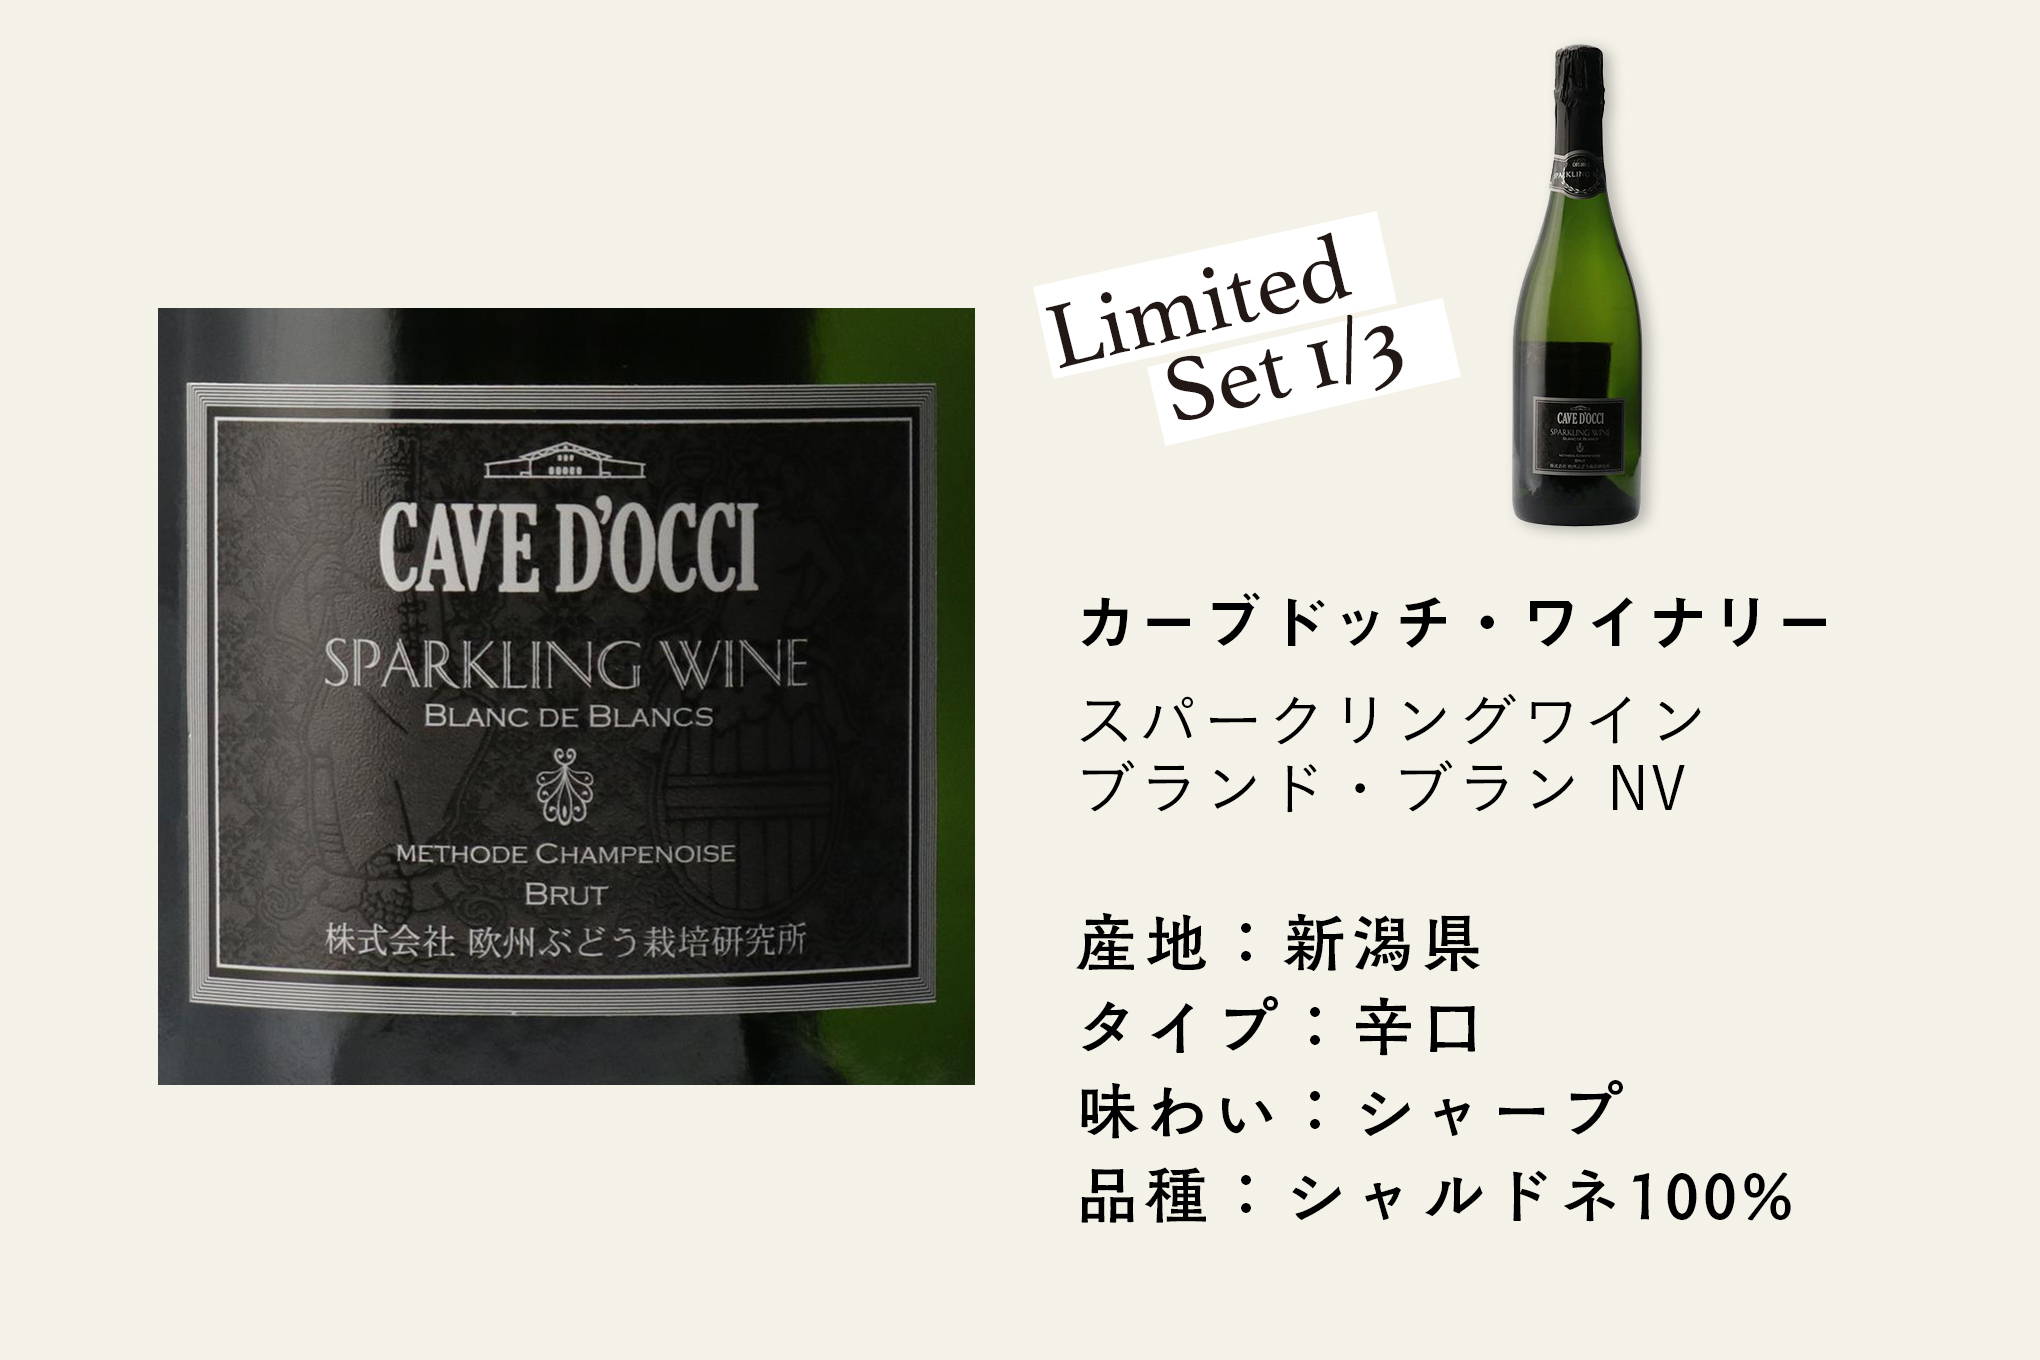 約20年前の原酒をブレンドした、国内では珍しい贅沢な瓶内二次発酵スパークリングワイン。新潟県を代表するワイナリーのプレミアムな逸品